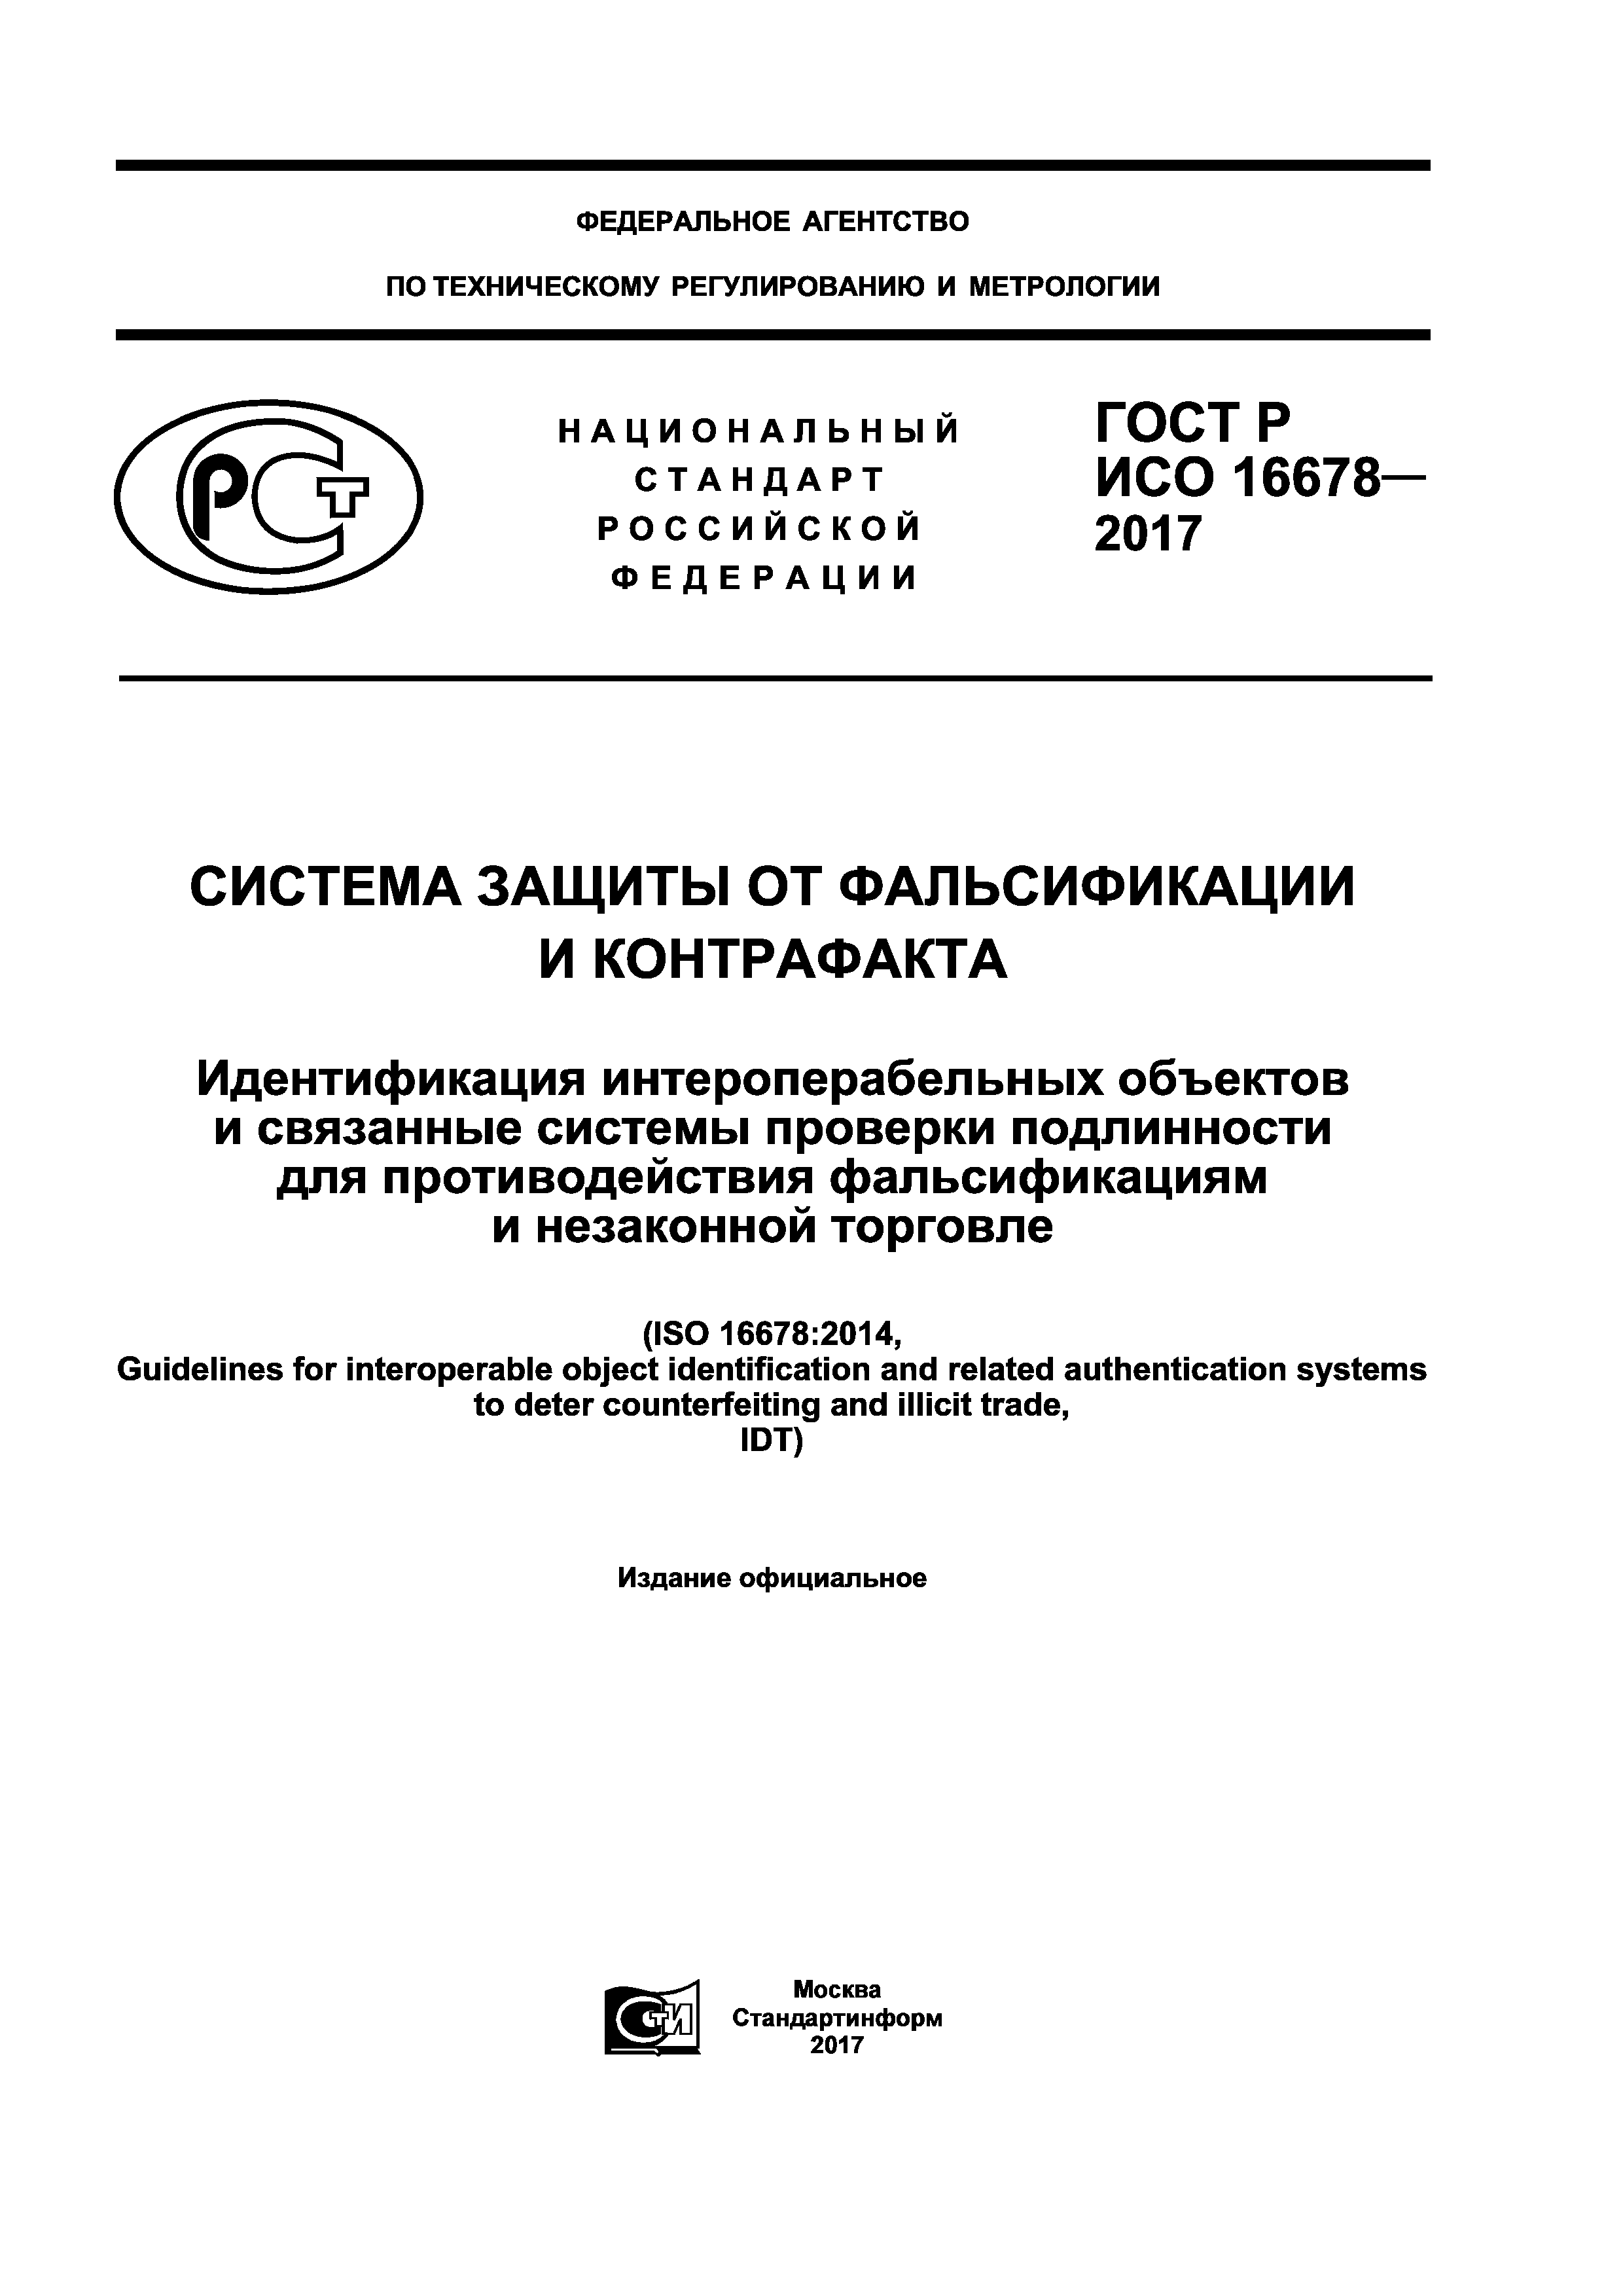 ГОСТ Р ИСО 16678-2017